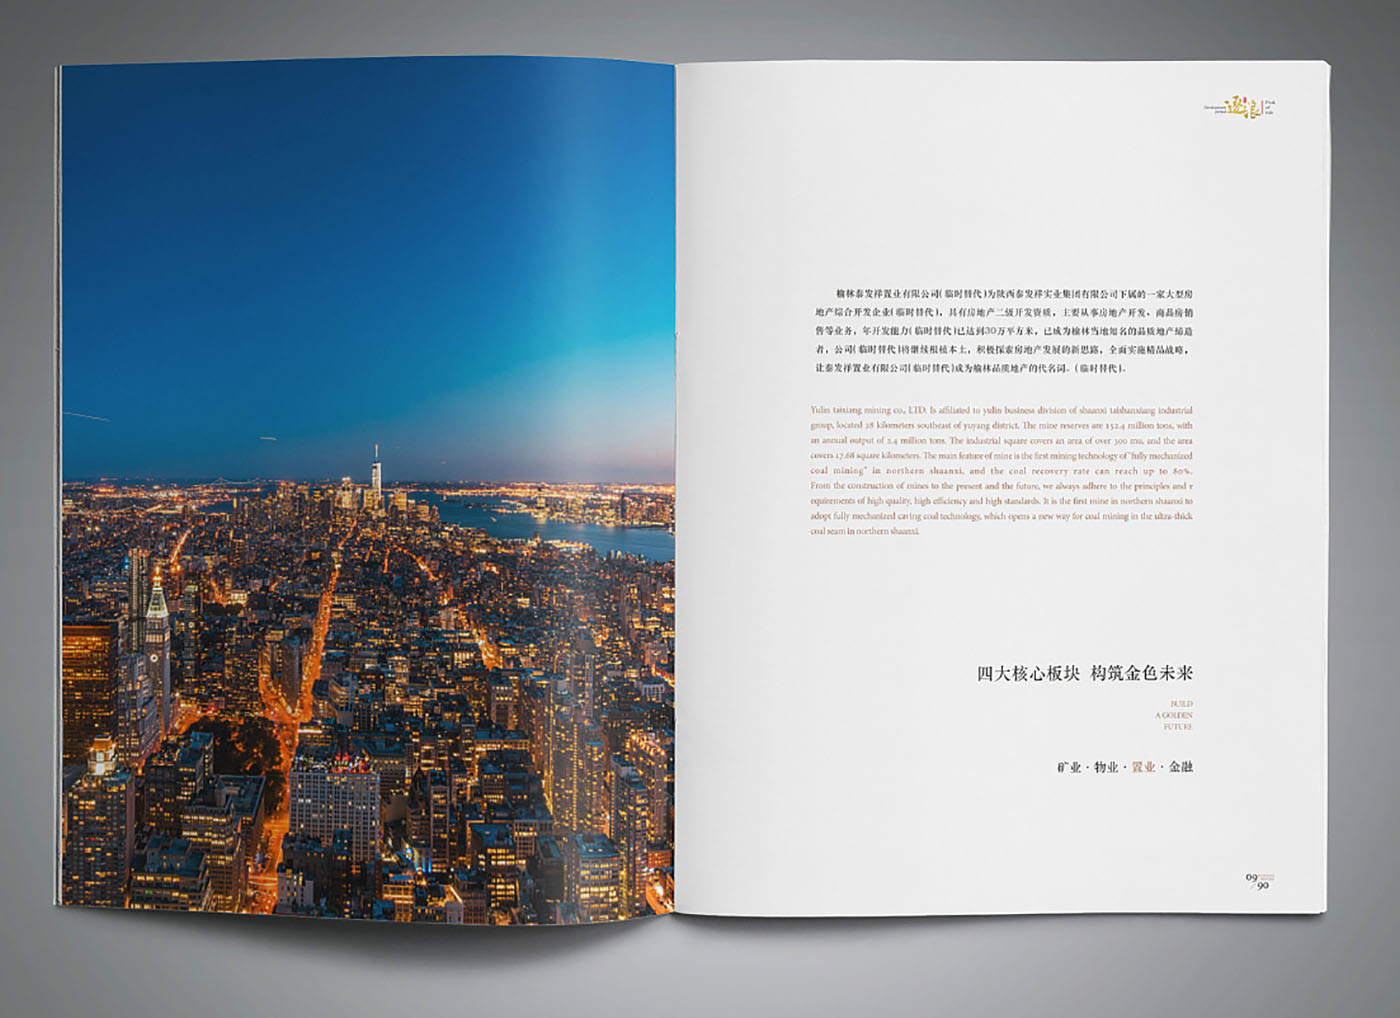 企业35周年纪念册设计-高端企业纪念册设计公司